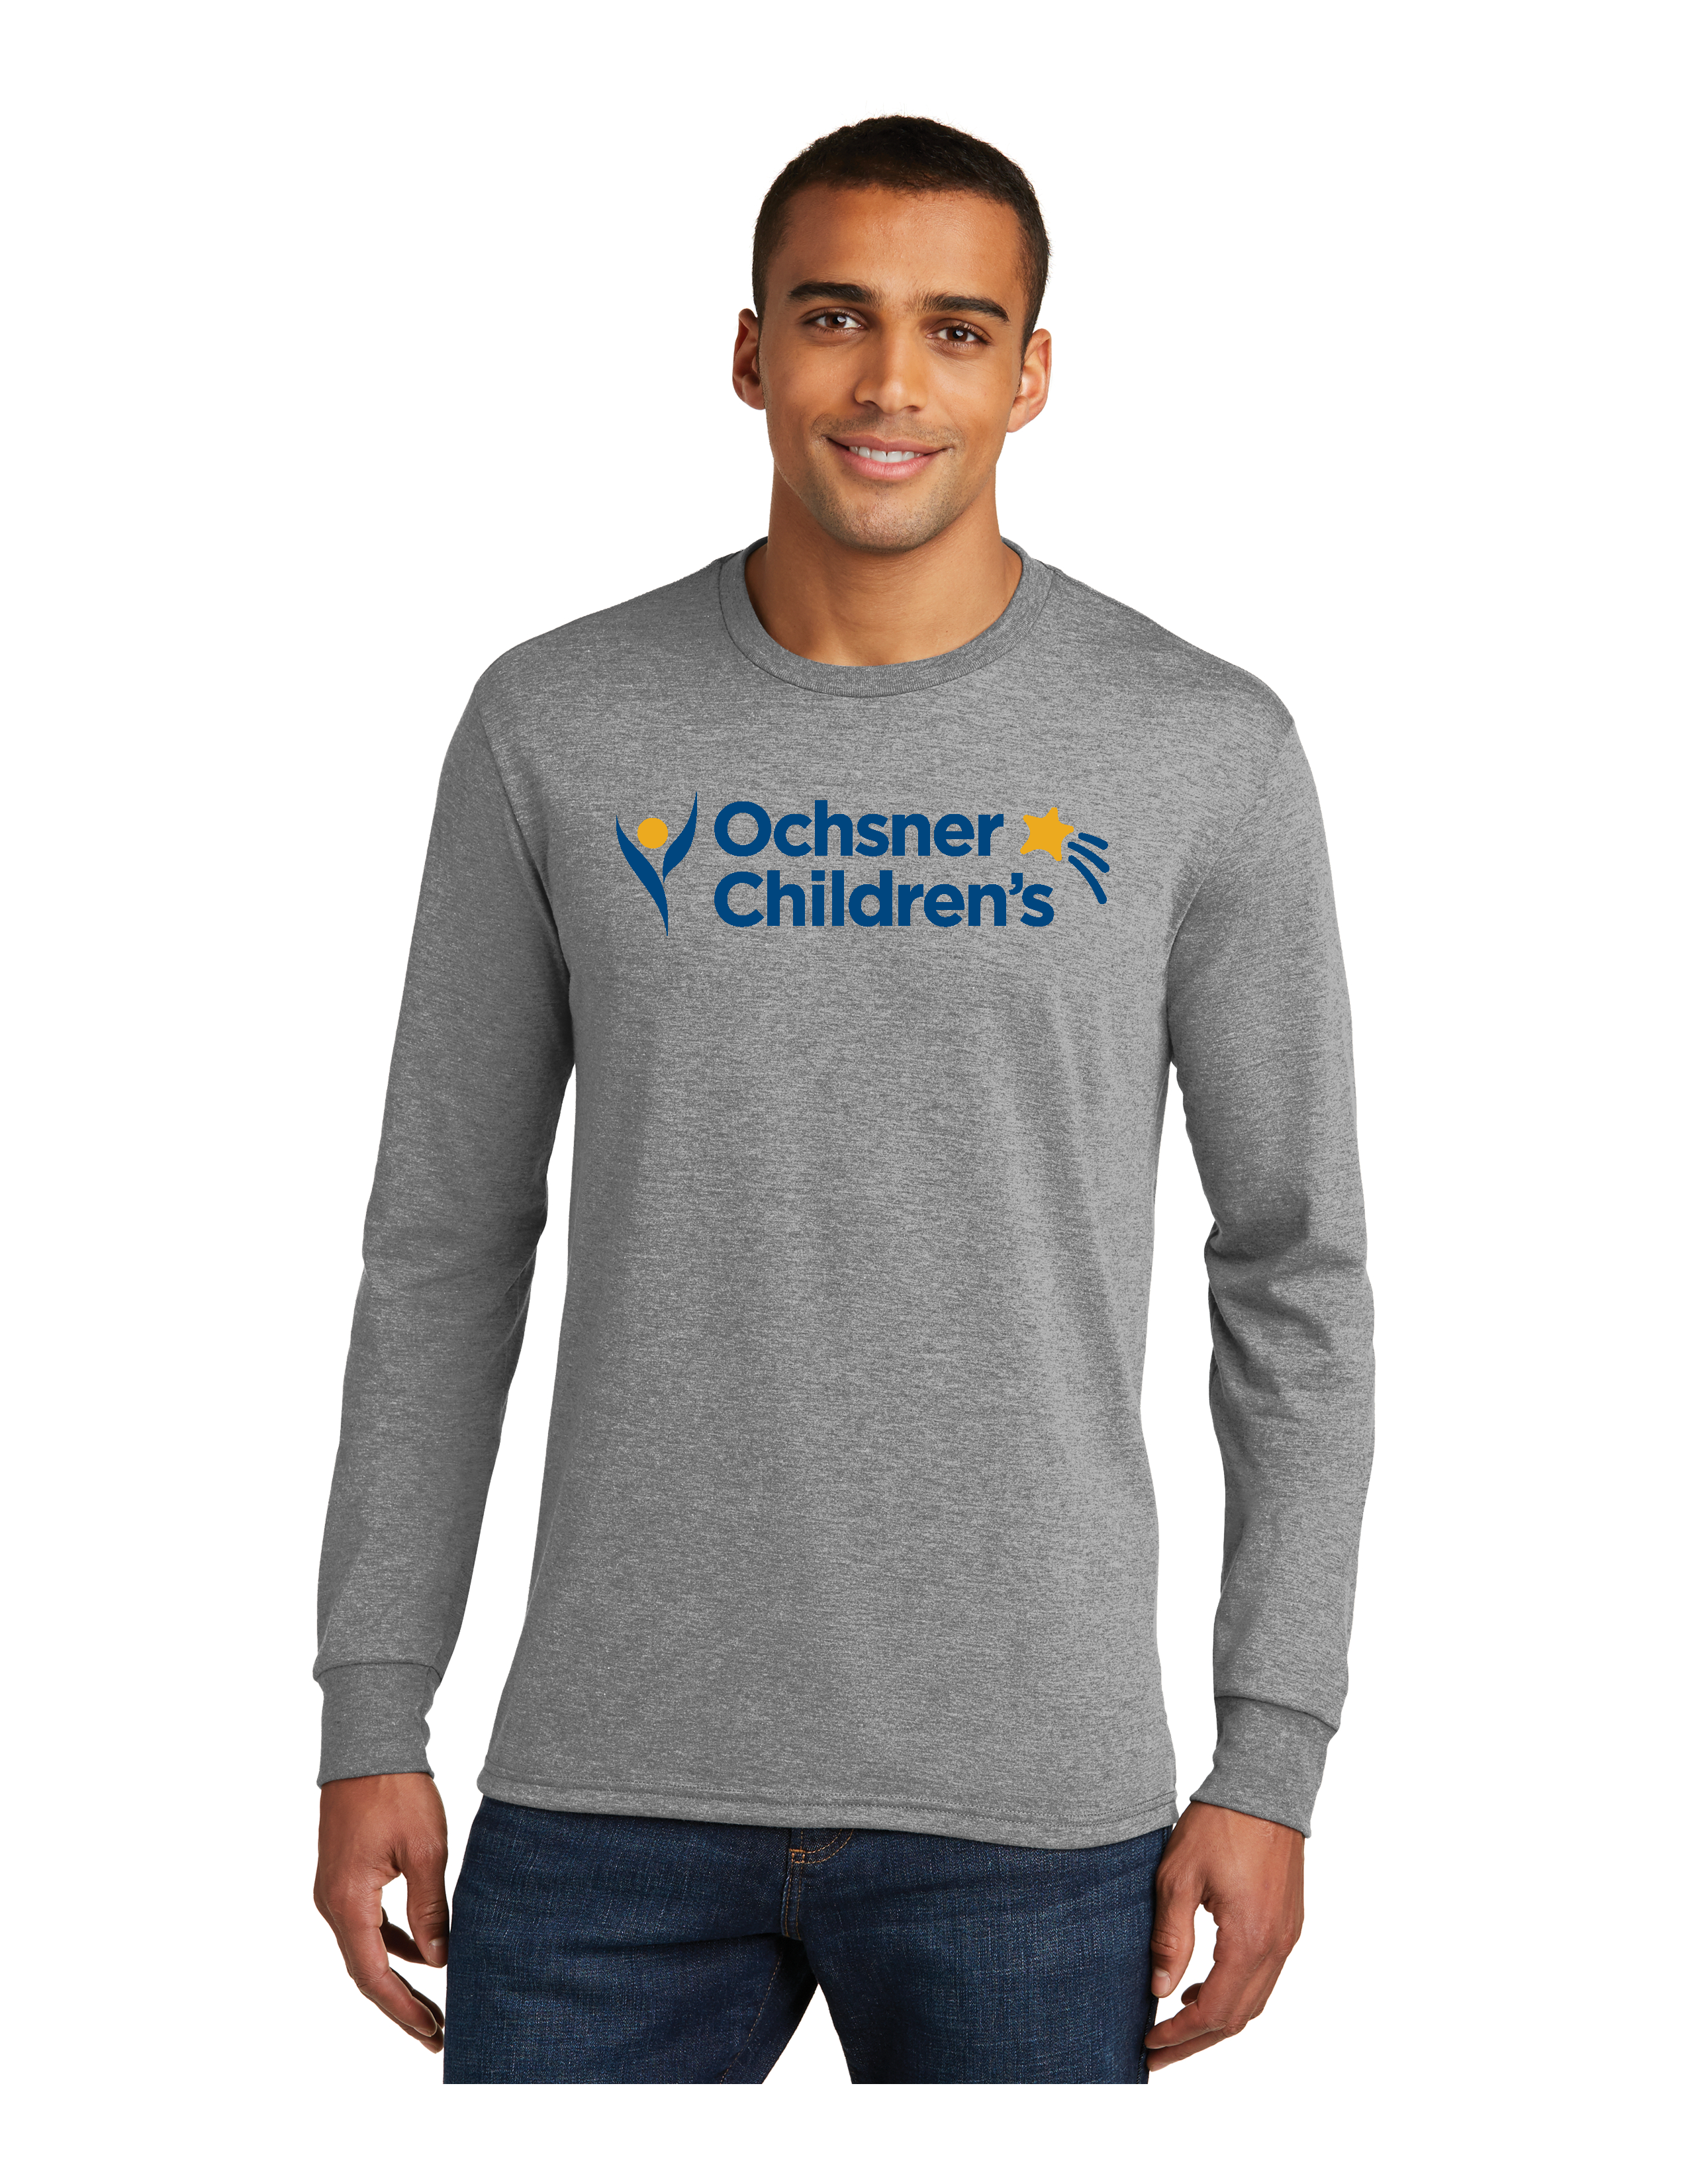 Ochsner Children's Long Sleeve Unisex T-Shirt, Gray, large image number 1